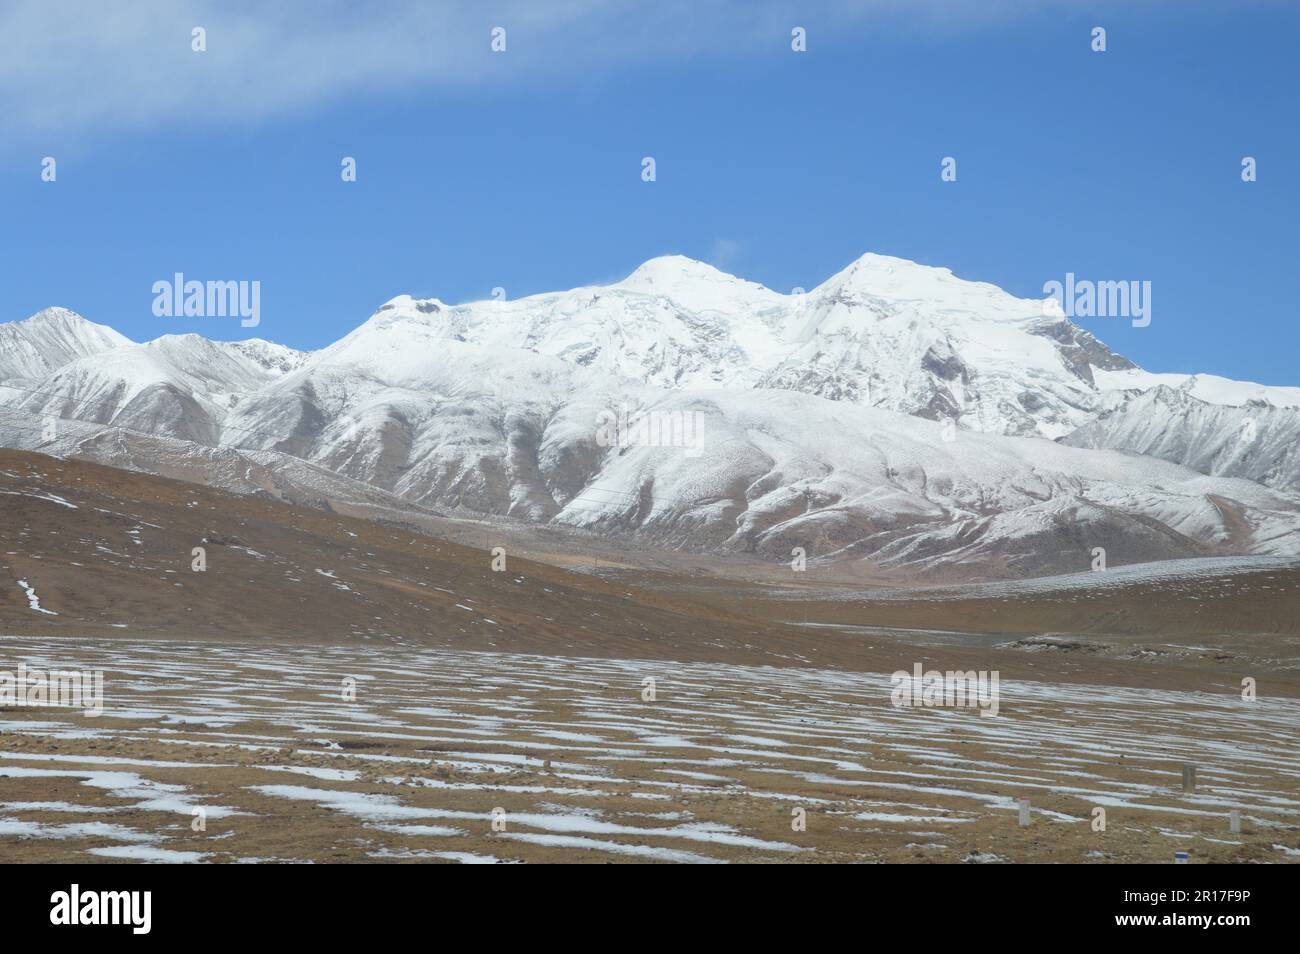 Volksrepublik China, Tibet: Die Schneelinie auf dem Hochplatau mit schneebedeckten Bergen als Kulisse. Stockfoto